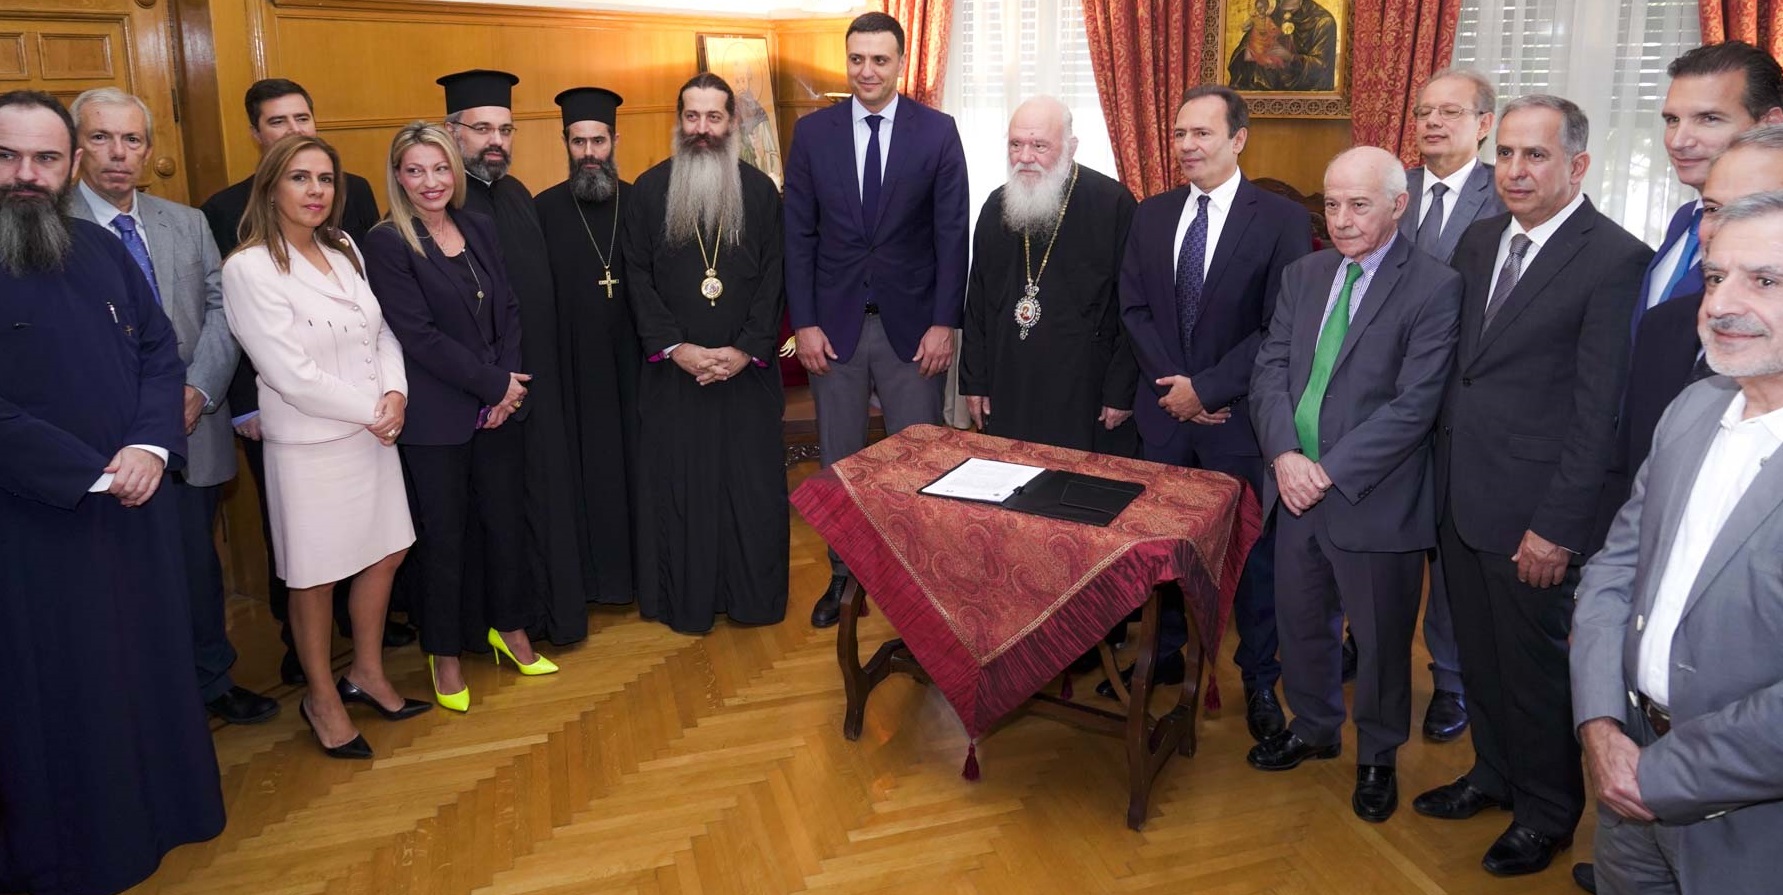 Η ΠΕΦ ανανέωσε μέχρι το 2022 το μνημόνιο συνεργασίας με την Ιερά Αρχιεπισκοπή Αθηνών